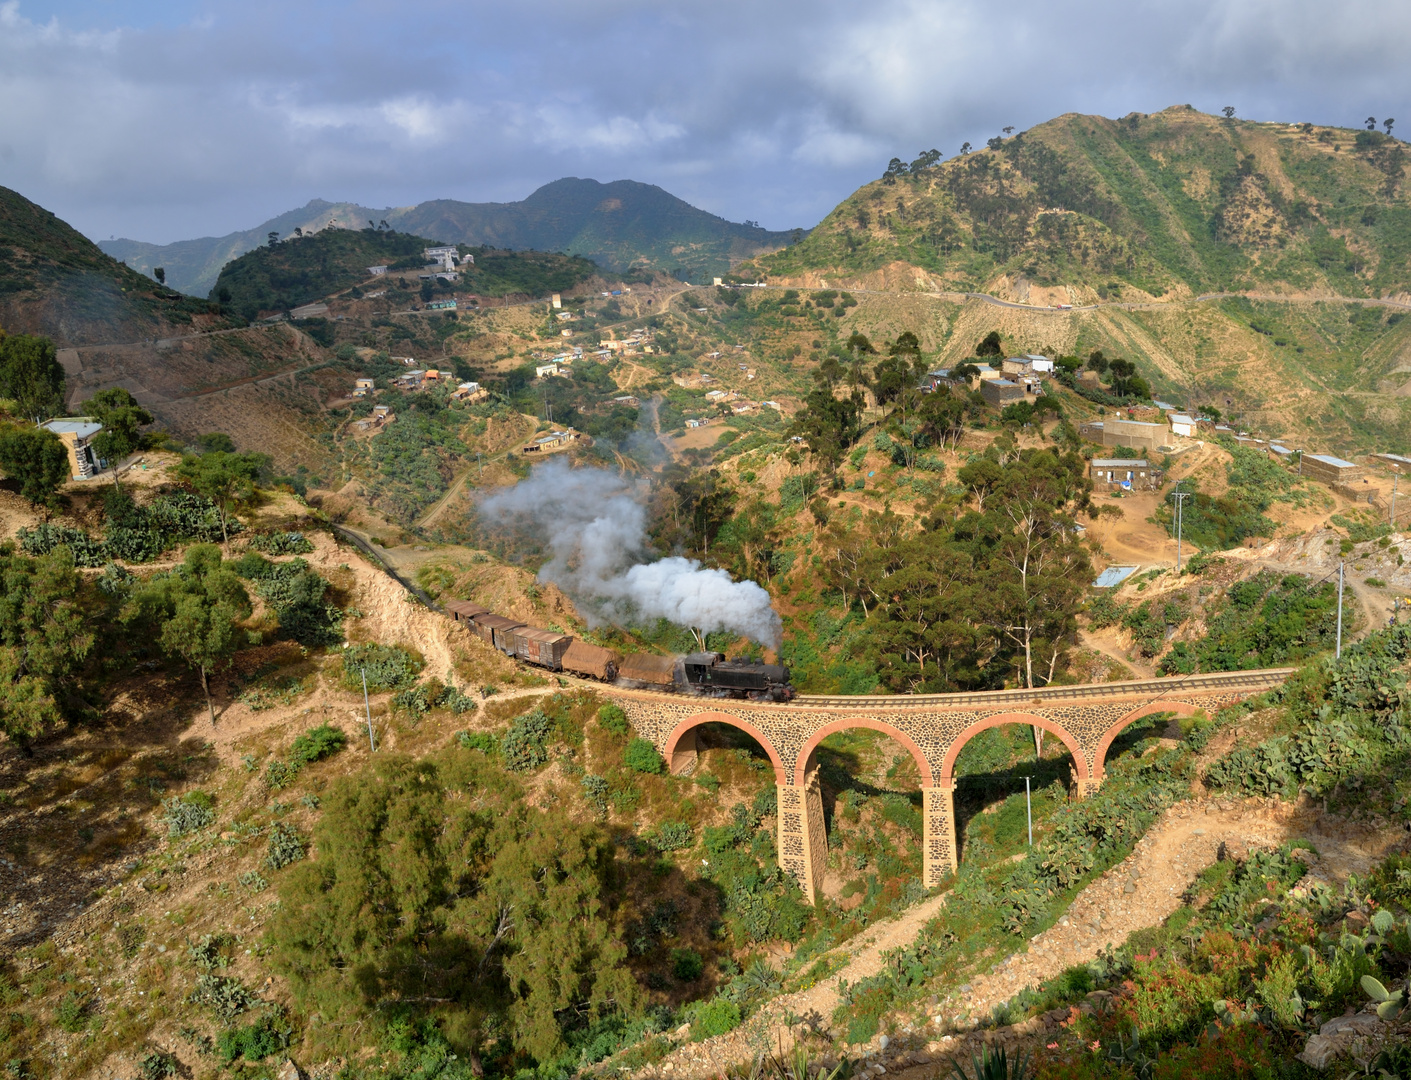 442.55 am 09.11.18 beim Aufstieg nach Asmara auf dem Viadukt bei Shegerini II